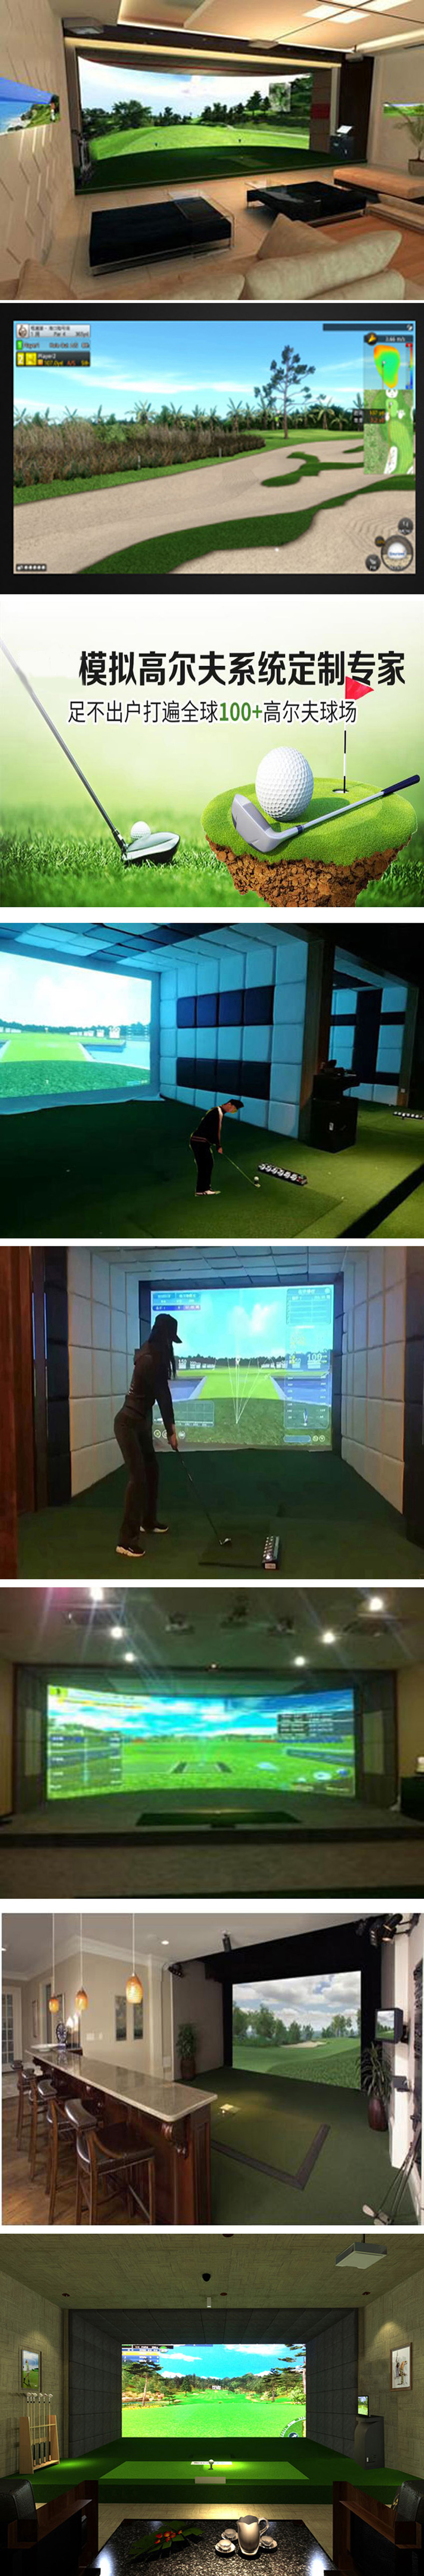 室内模拟高尔夫球场 三.jpg